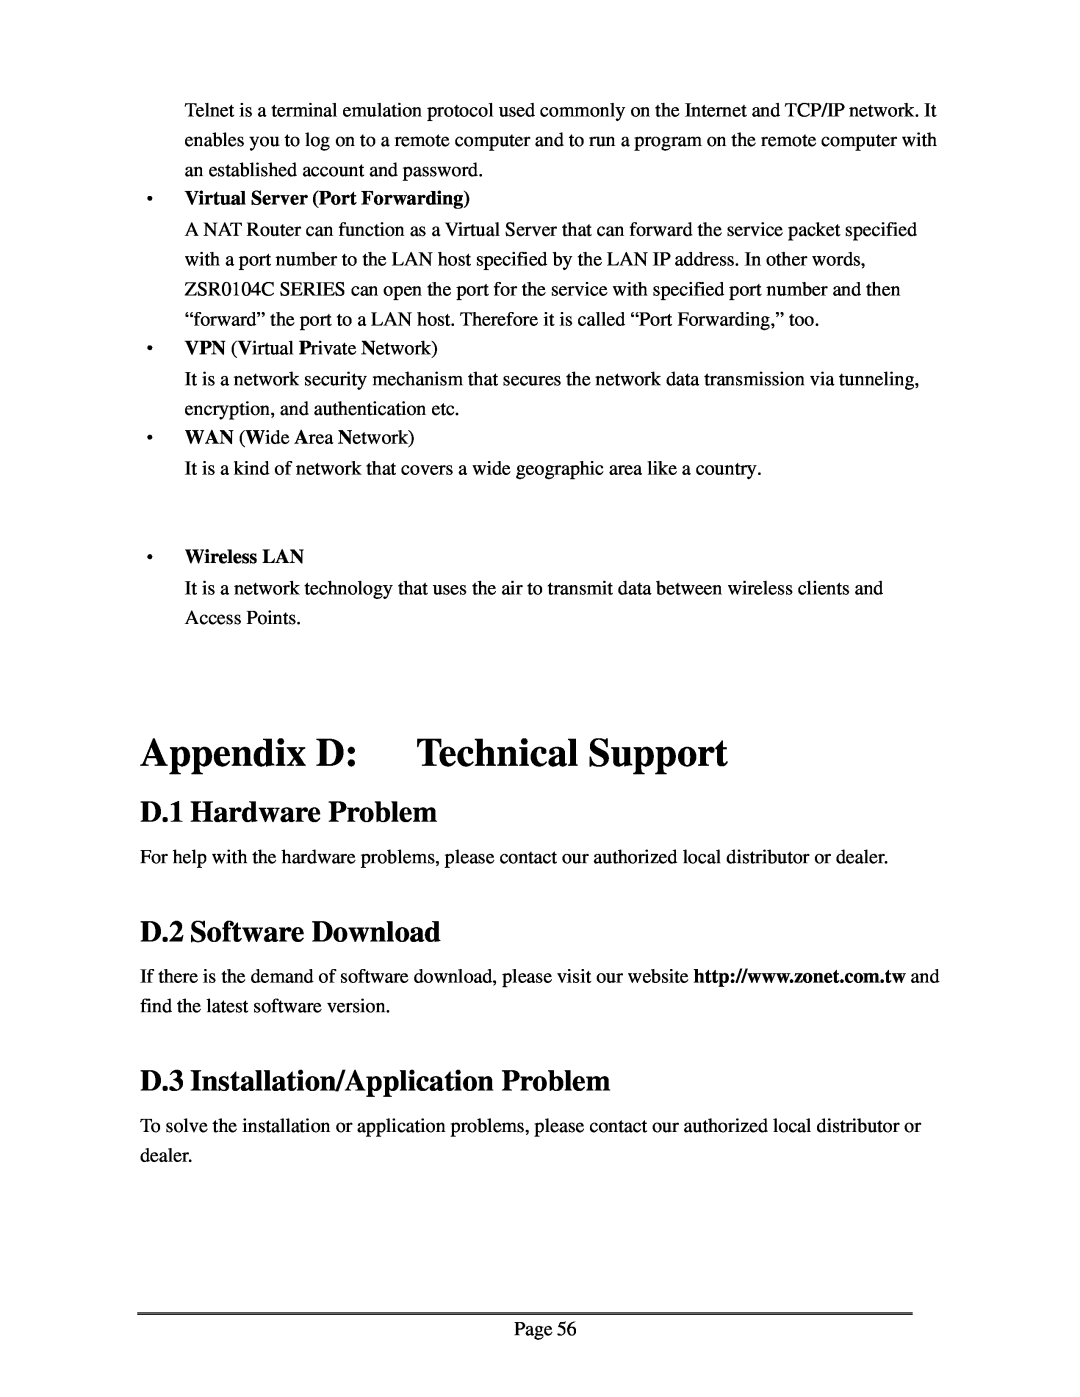 Zonet Technology ZSR0104C Series Appendix D Technical Support, D.1 Hardware Problem, D.2 Software Download, ‧ Wireless LAN 